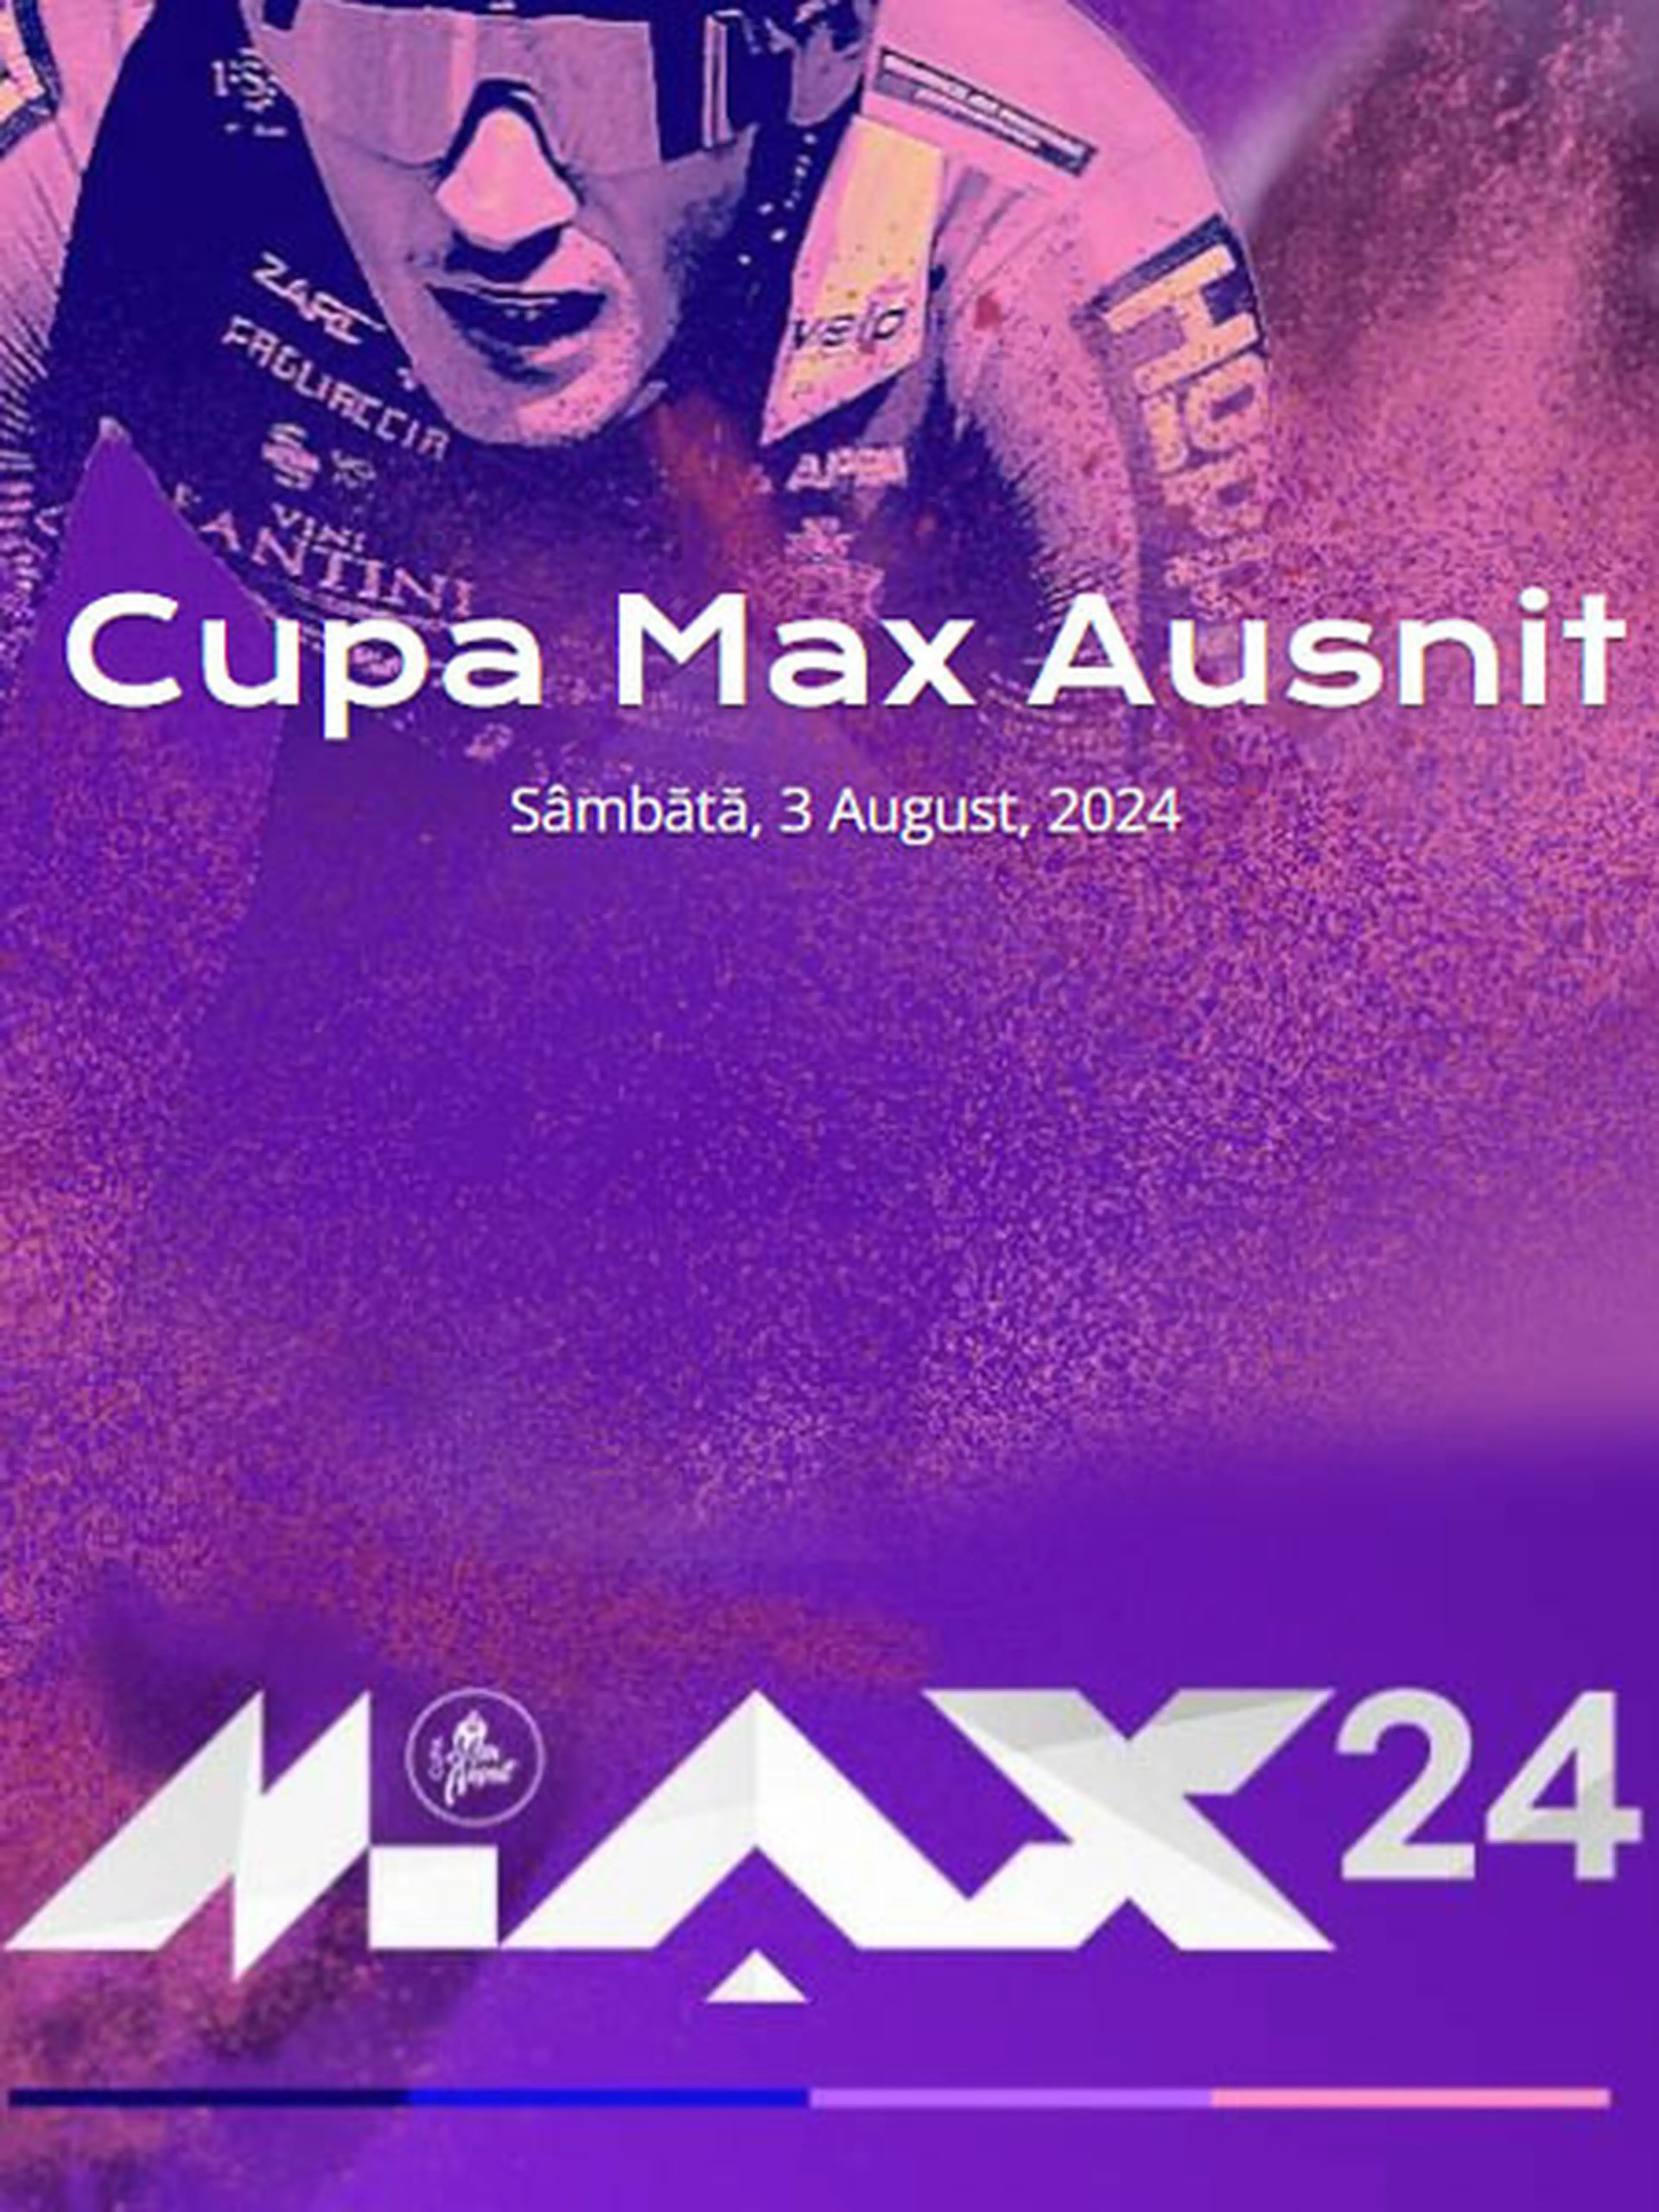 Cupa Max Ausnit 2024